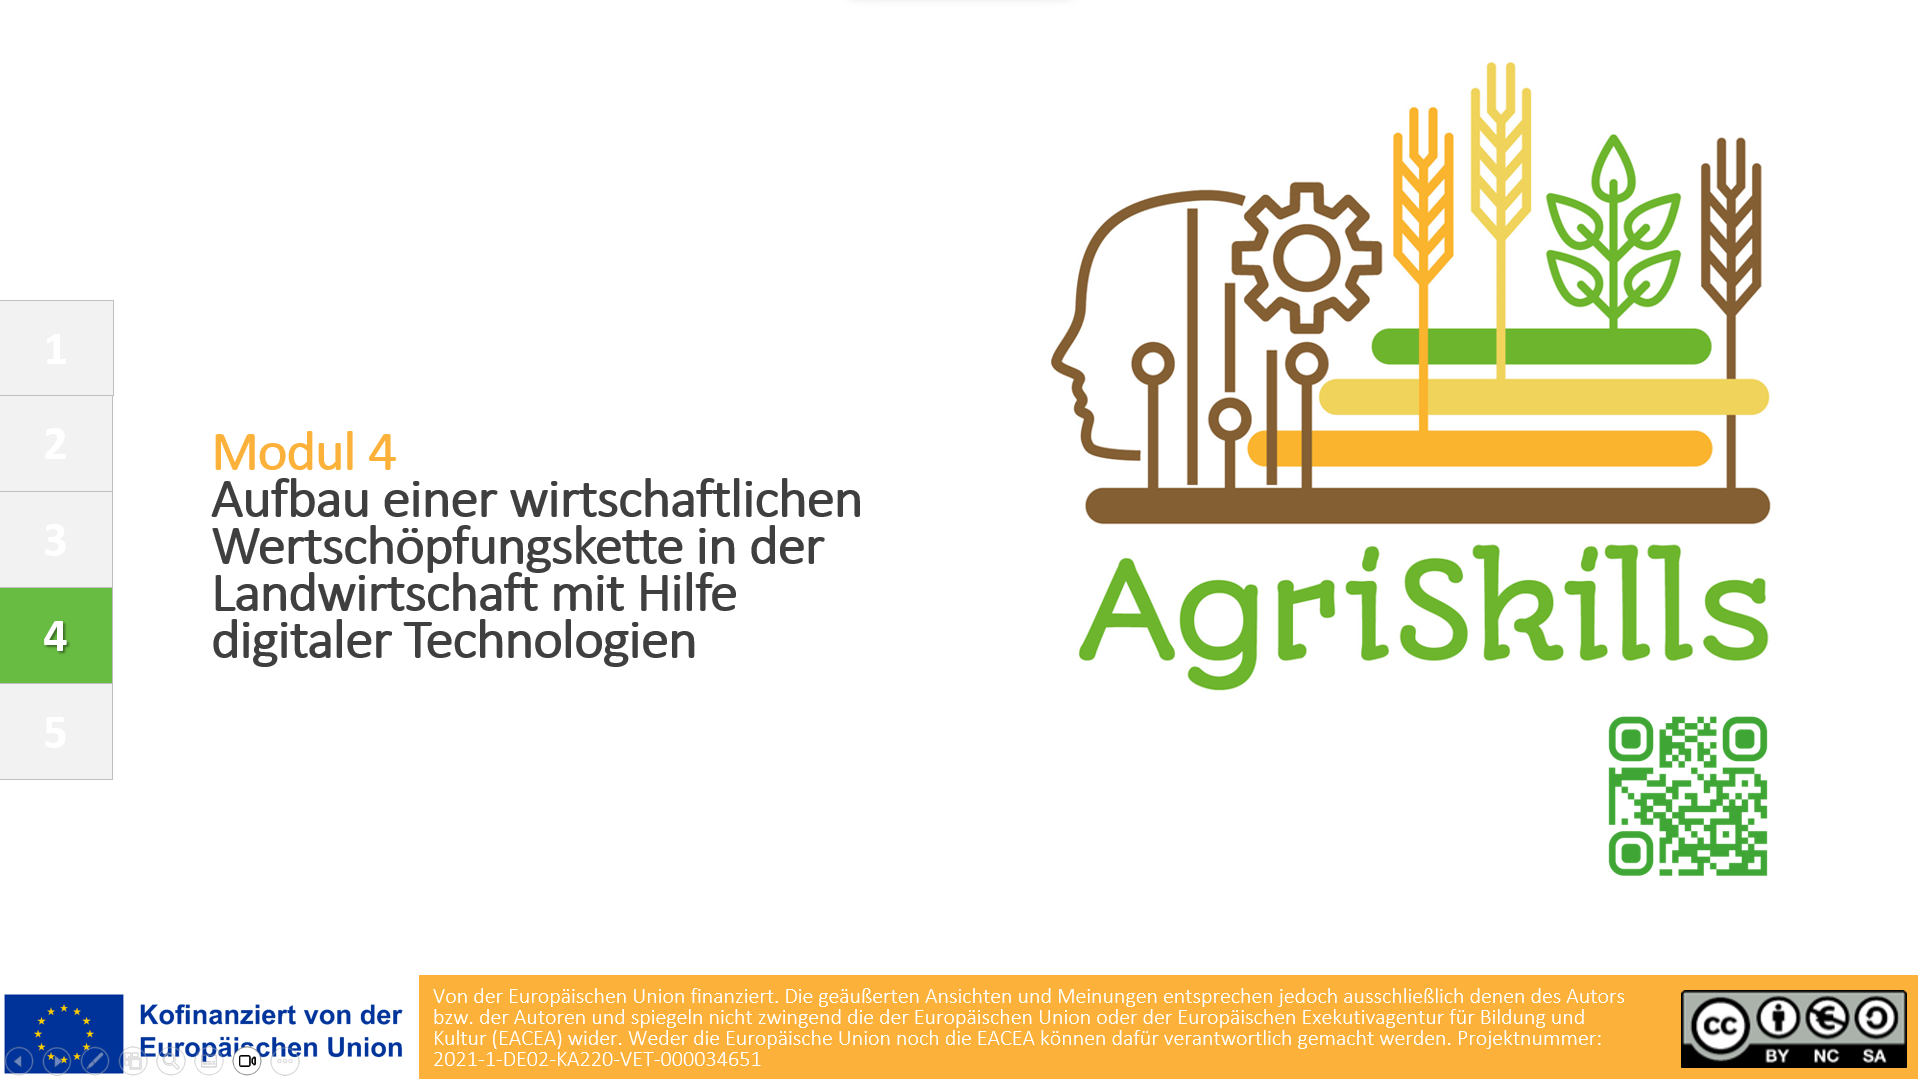 Aufbau einer wirtschaftlichen Wertschöpfungskette in der Landwirtschaft mit Hilfe digitaler Technologien